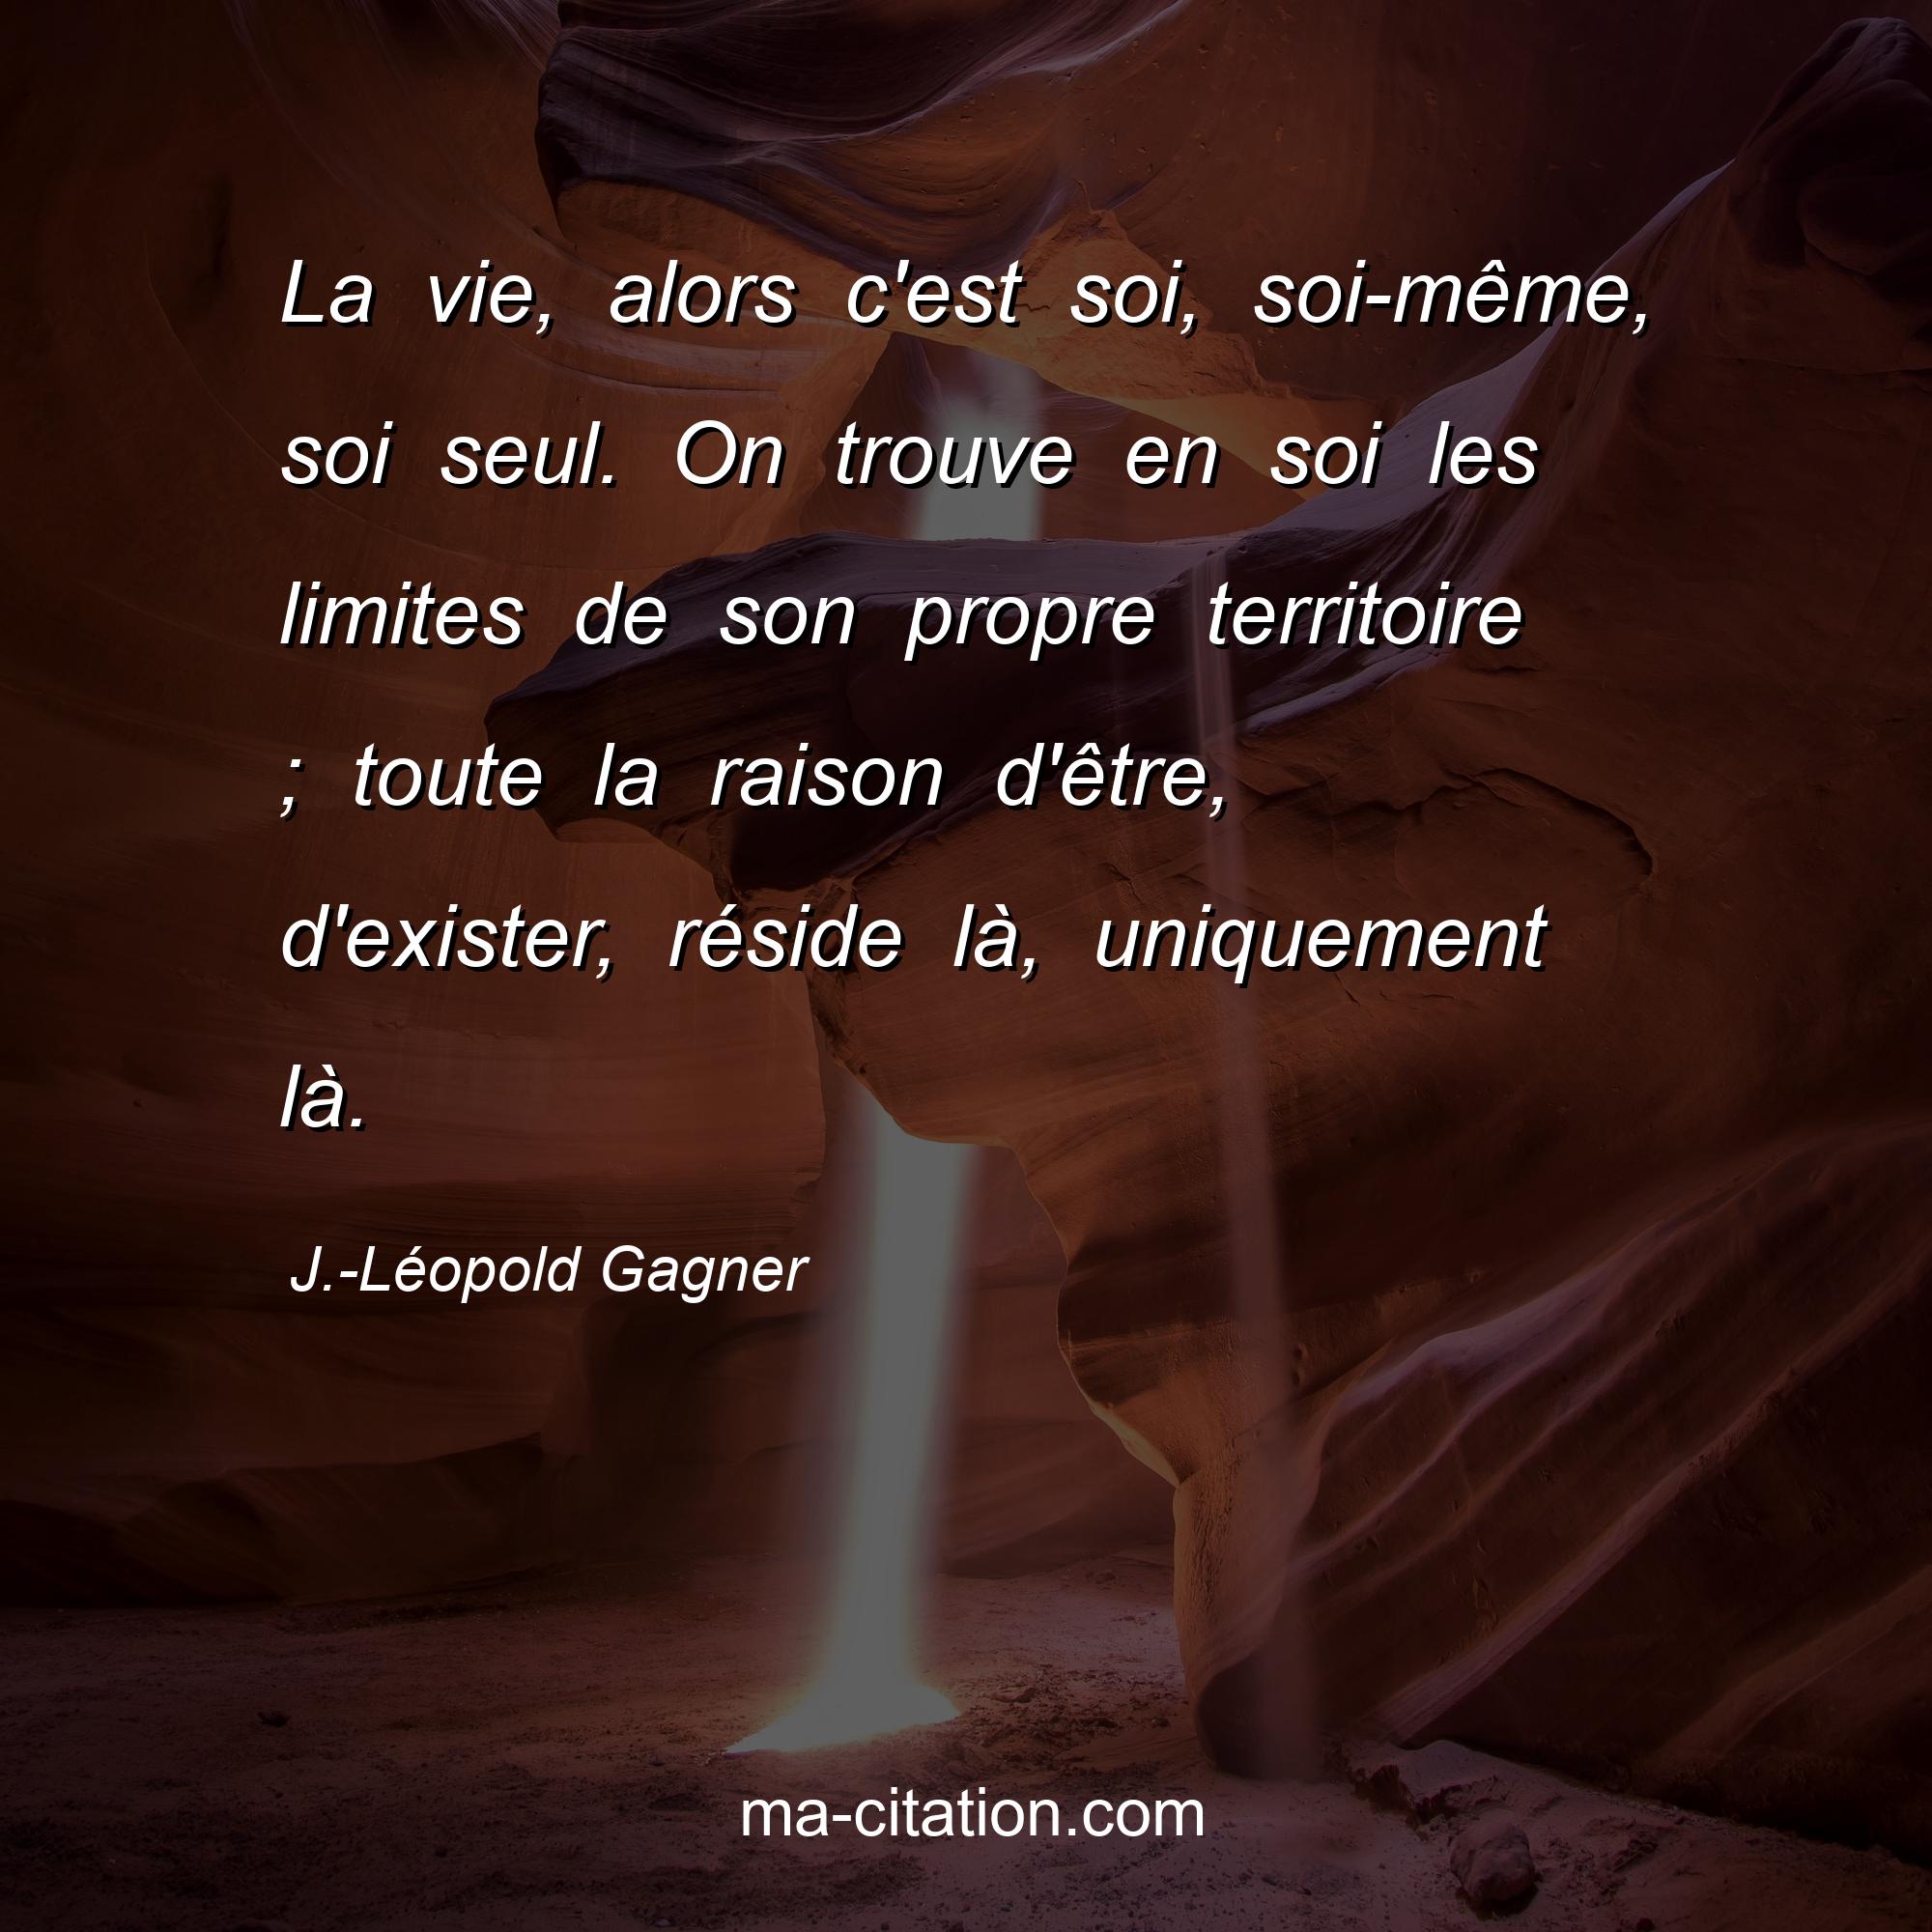 J.-Léopold Gagner : La vie, alors c'est soi, soi-même, soi seul. On trouve en soi les limites de son propre territoire ; toute la raison d'être, d'exister, réside là, uniquement là.